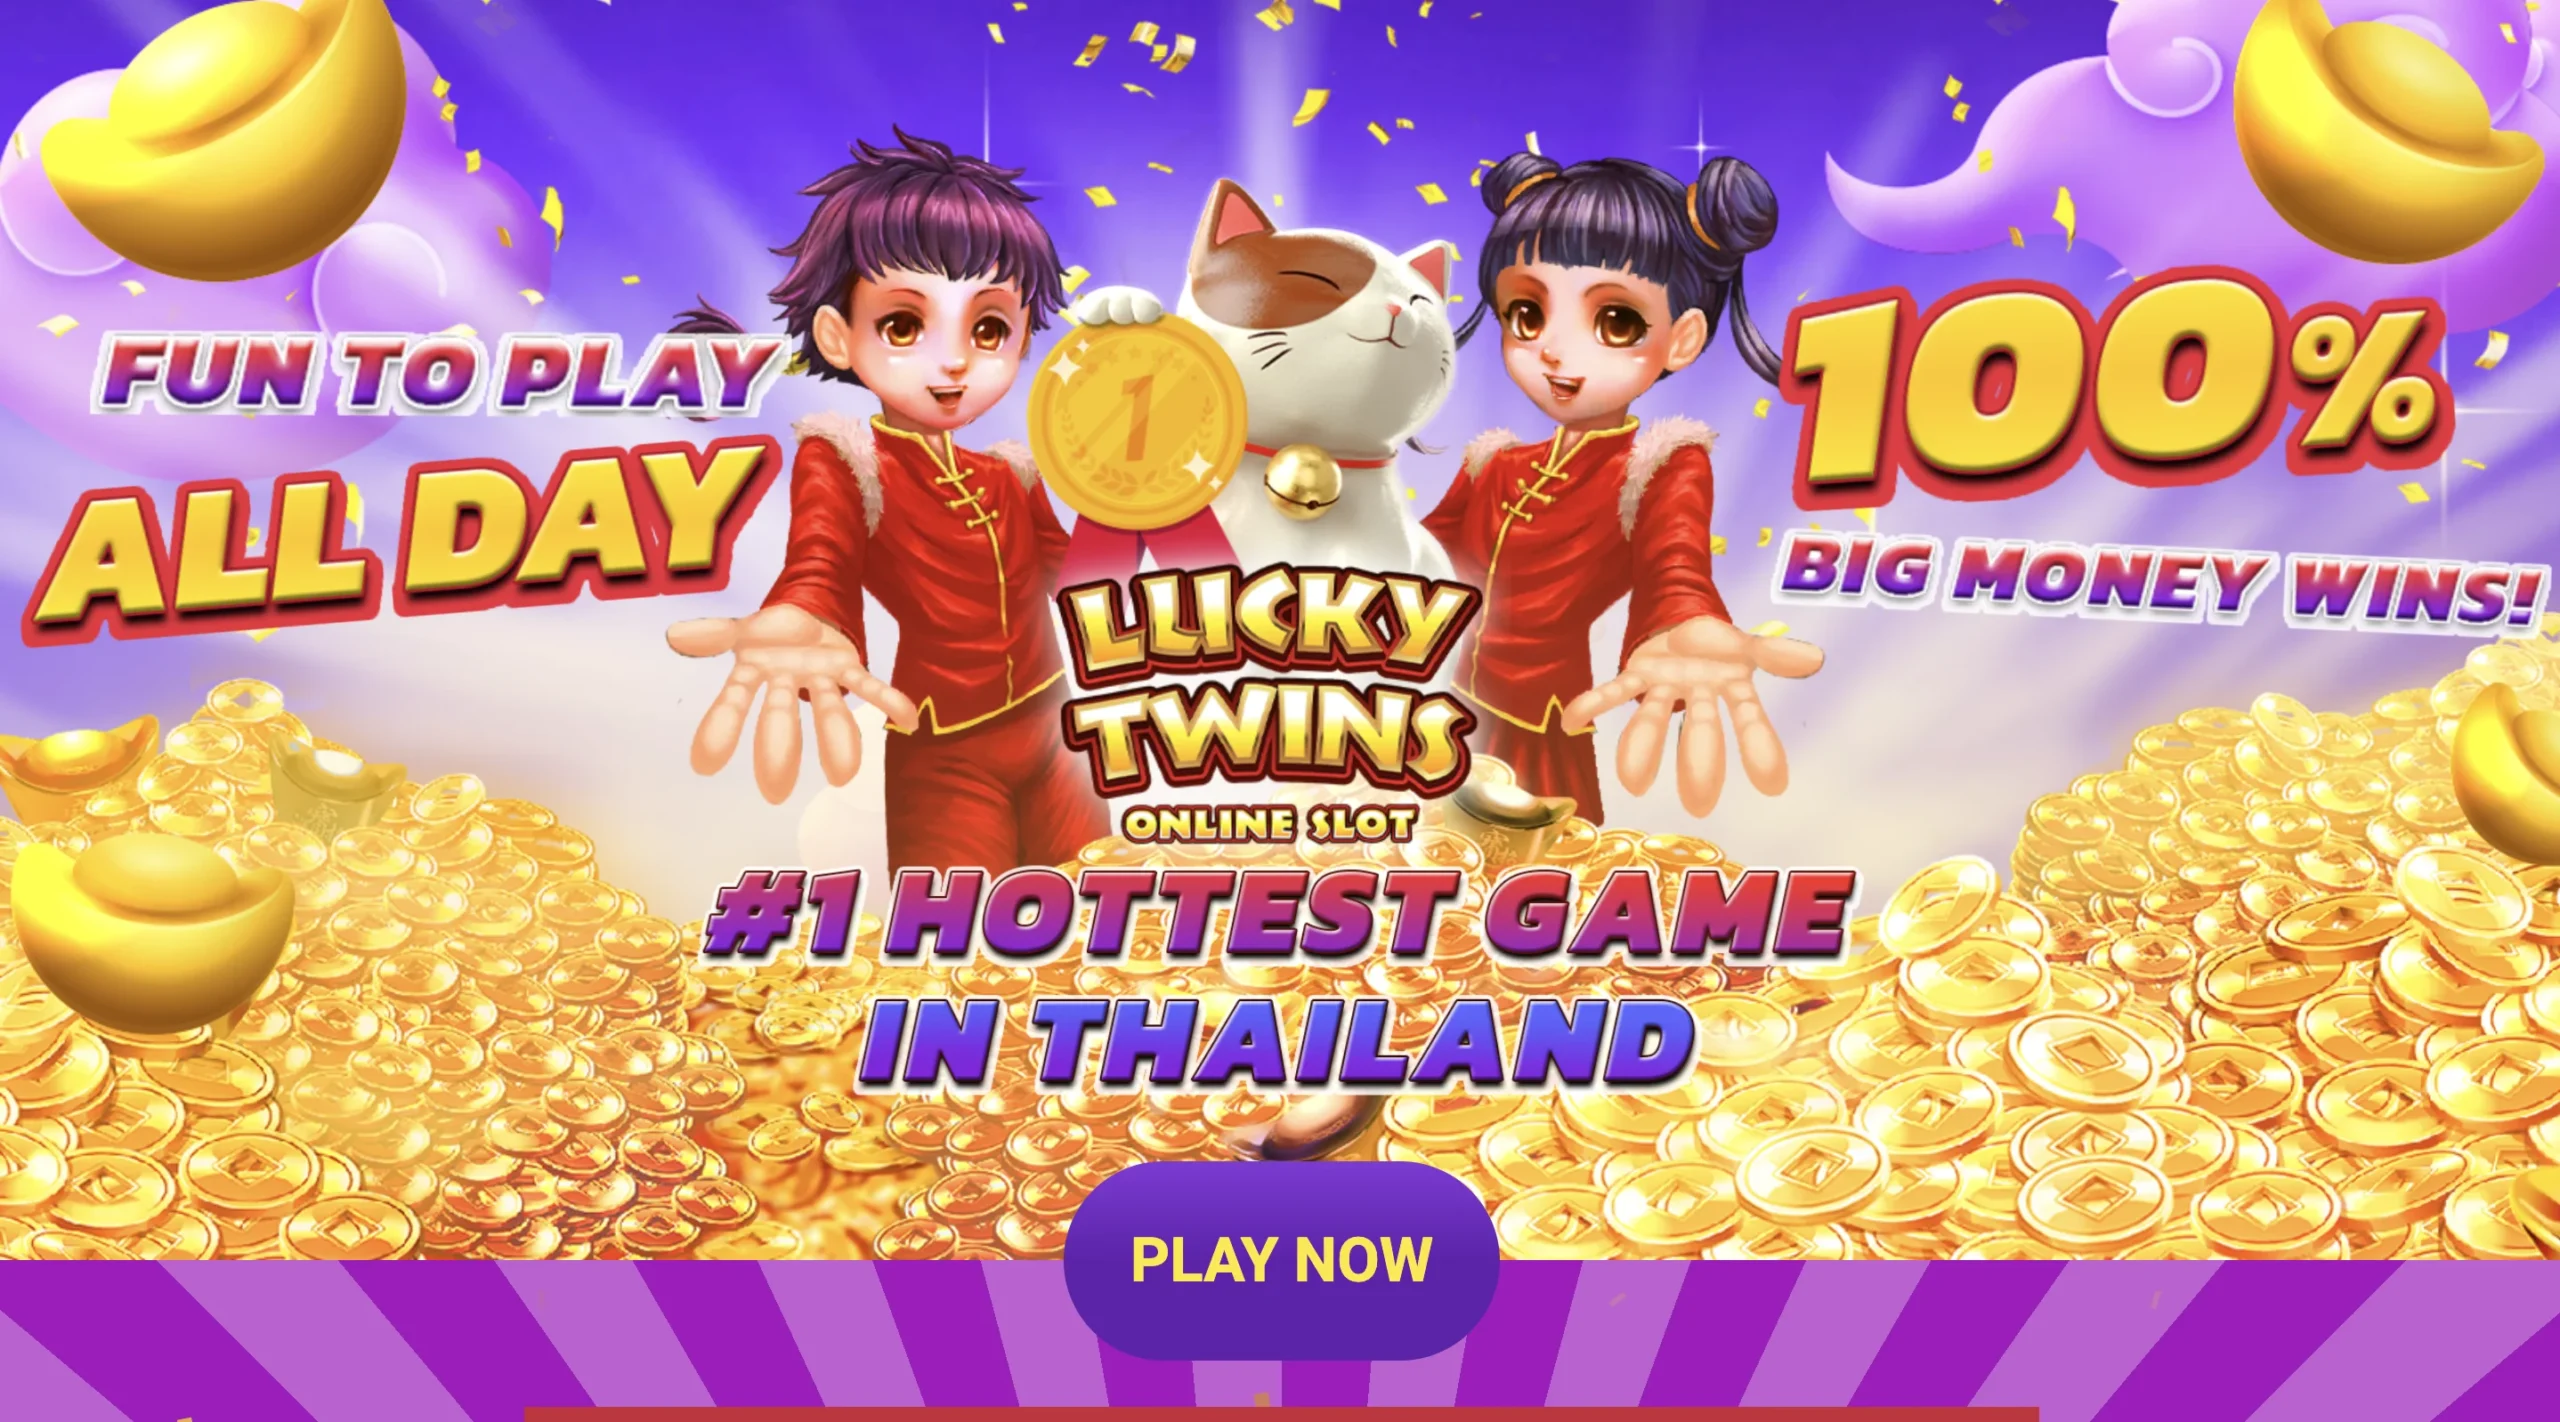 Luật chơi Lucky Twins tại Debet online đầy đủ nhất